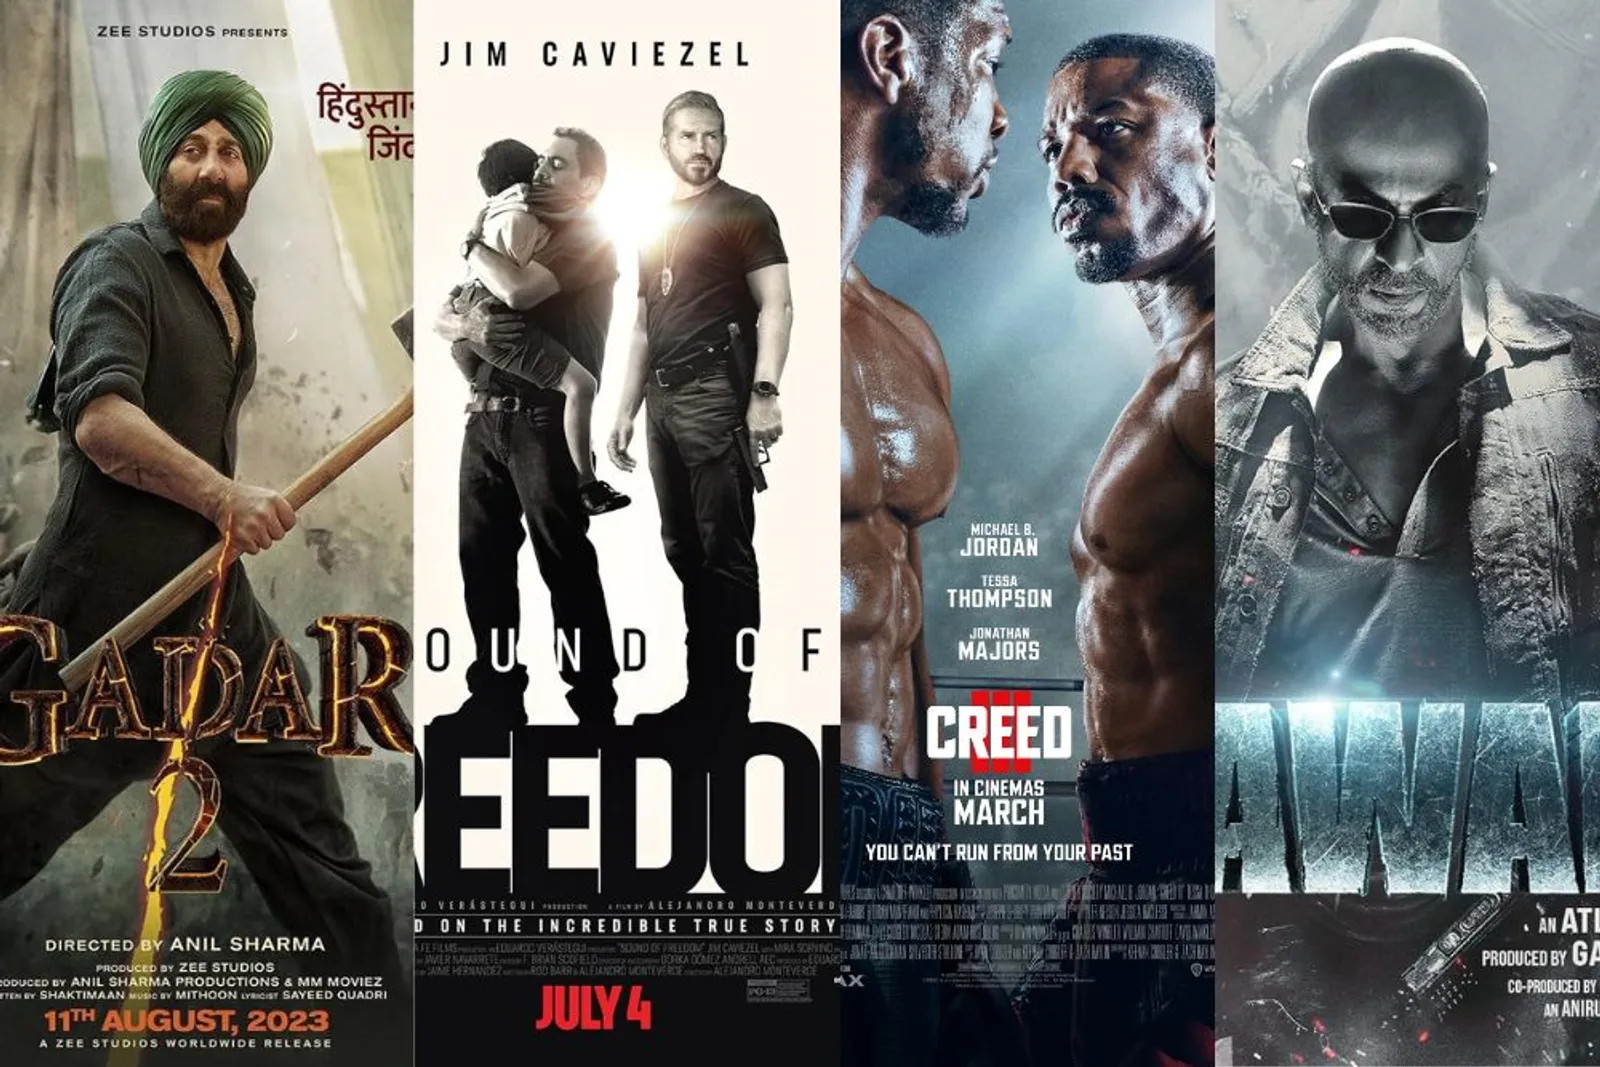 10 Film Paling Banyak dicari di Tahun 2023 Menurut Google Search